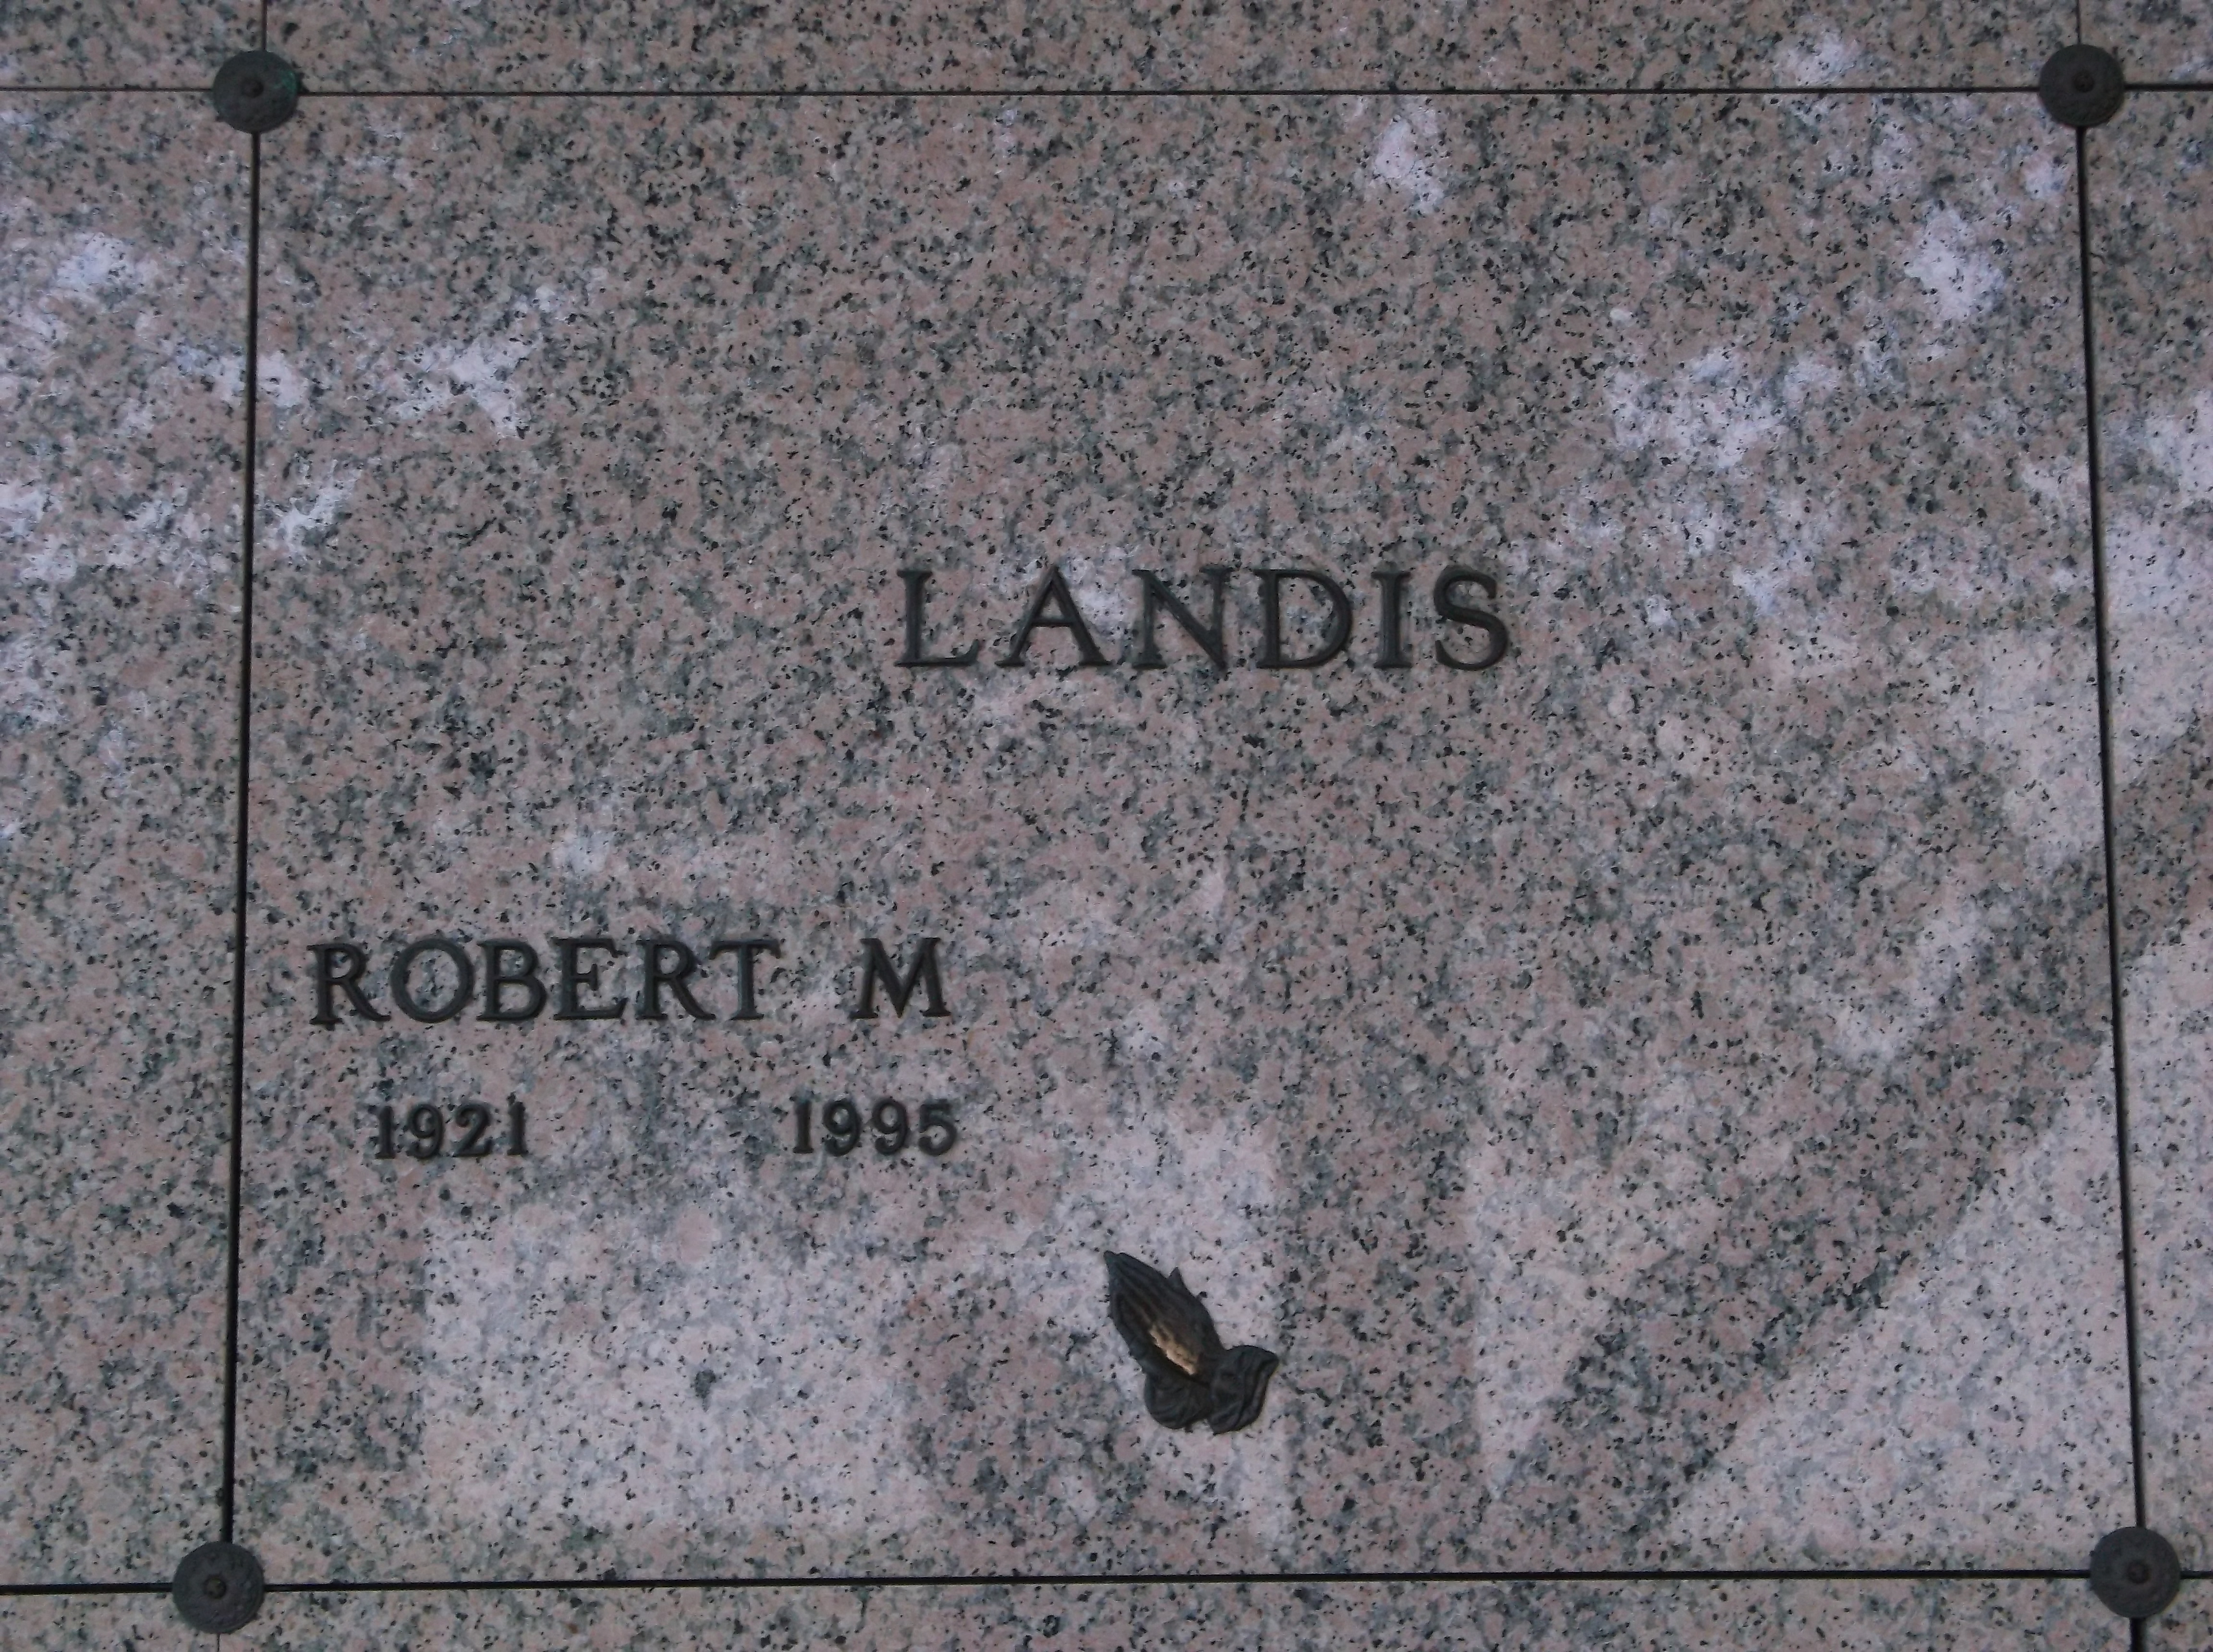 Robert M Landis